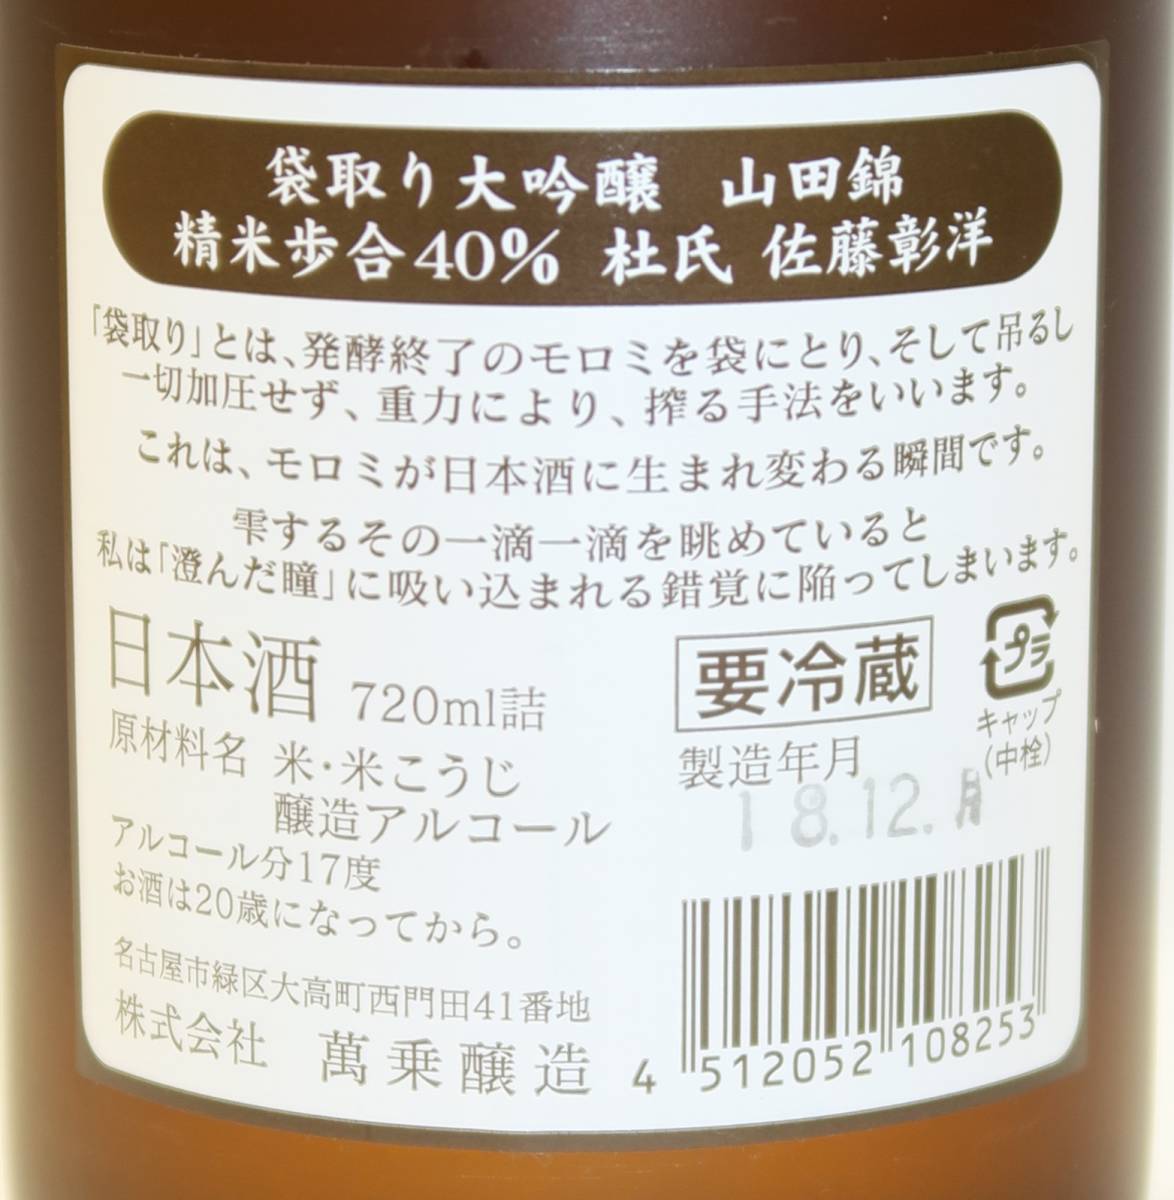 .. человек 9 flat следующий EYE collection 2005 720ml* японкое рисовое вино (sake) * нераспечатанный 